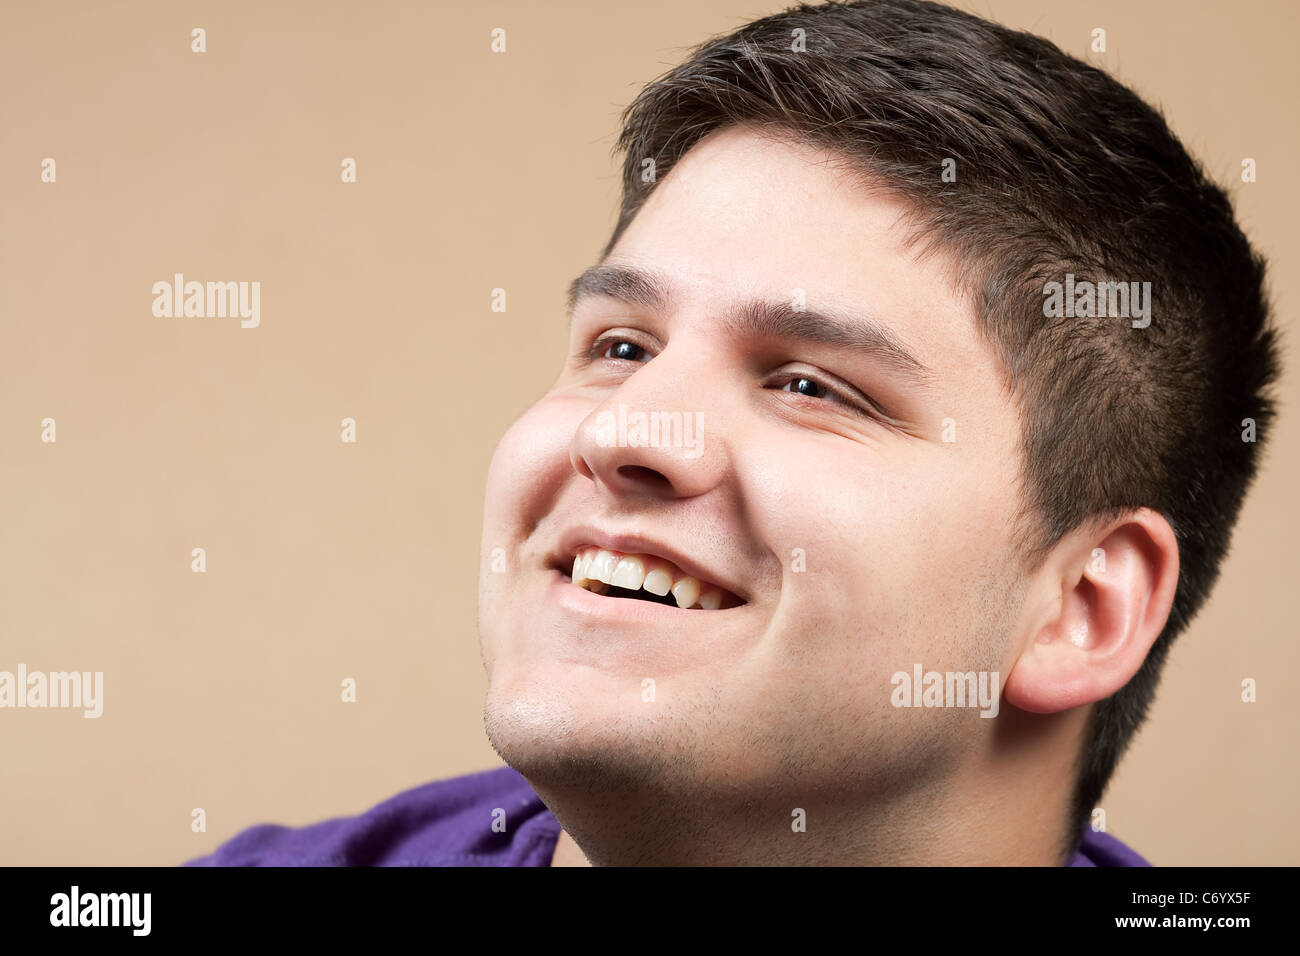 Ein lächelnder junger Mann in seinen späten Teenager über Tan farbigem Hintergrund isoliert. Stockfoto